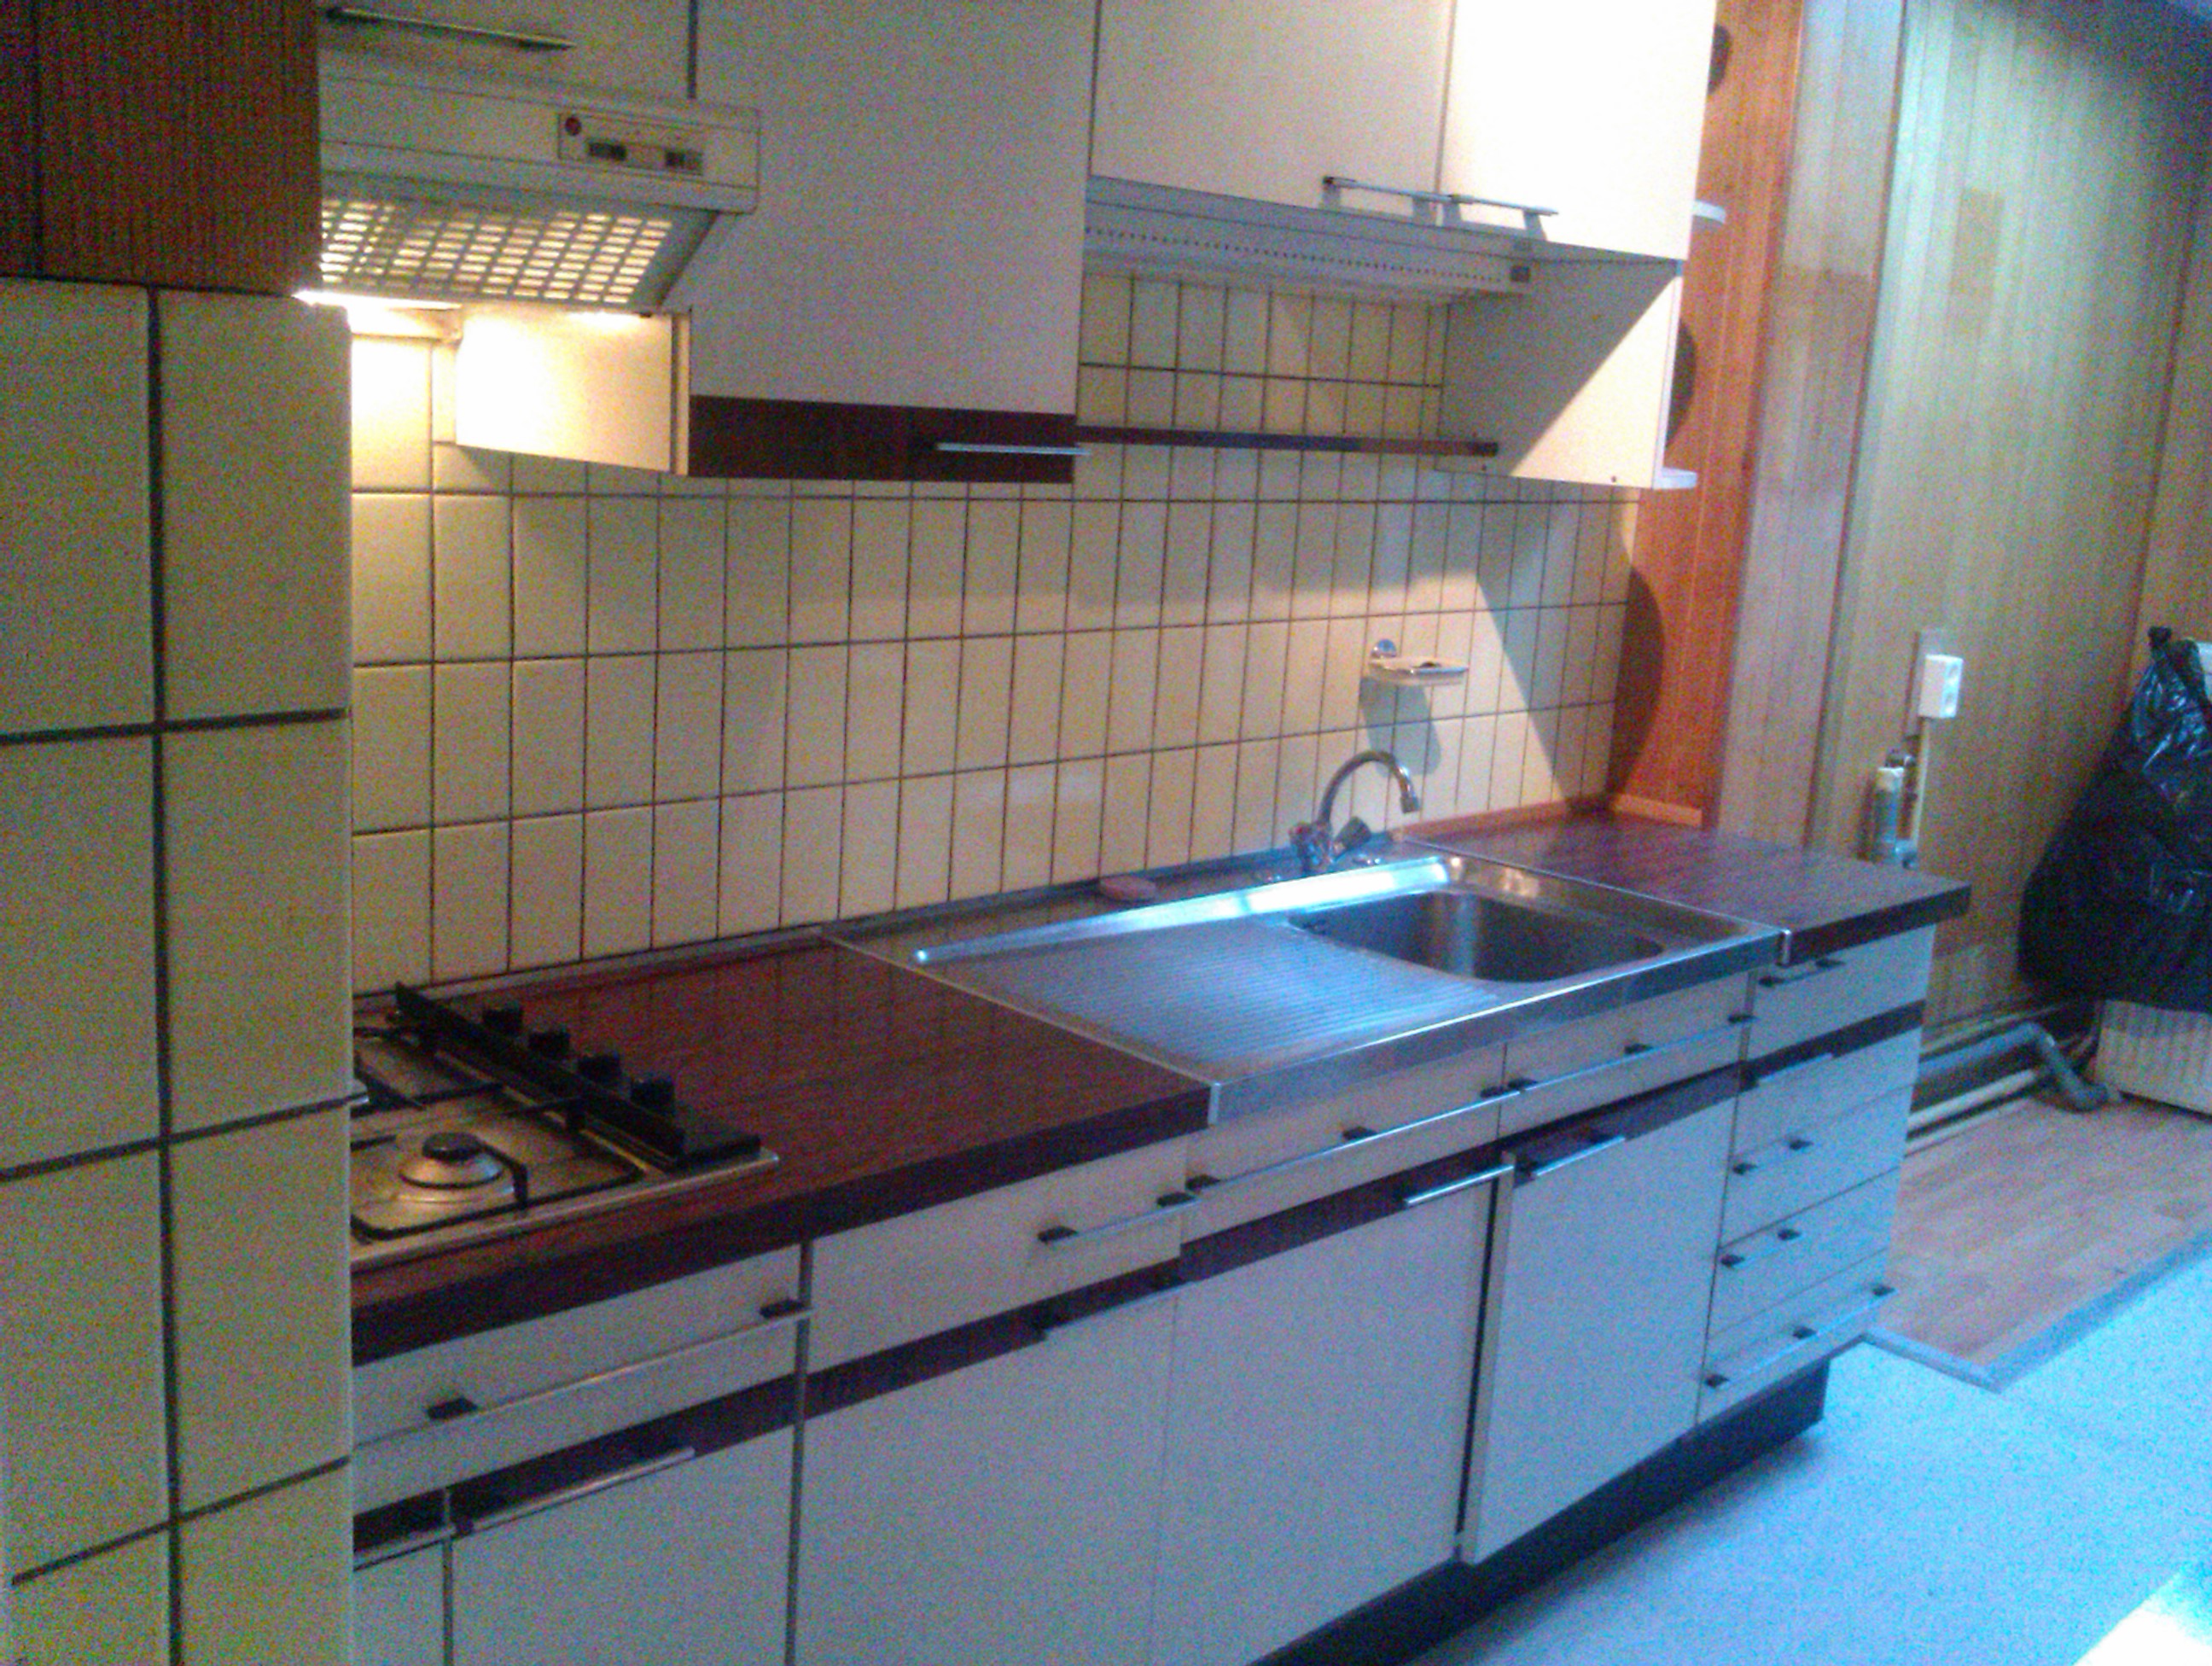 Uitgelezene Jaren 60/70 keuken | Bokt.nl PI-06